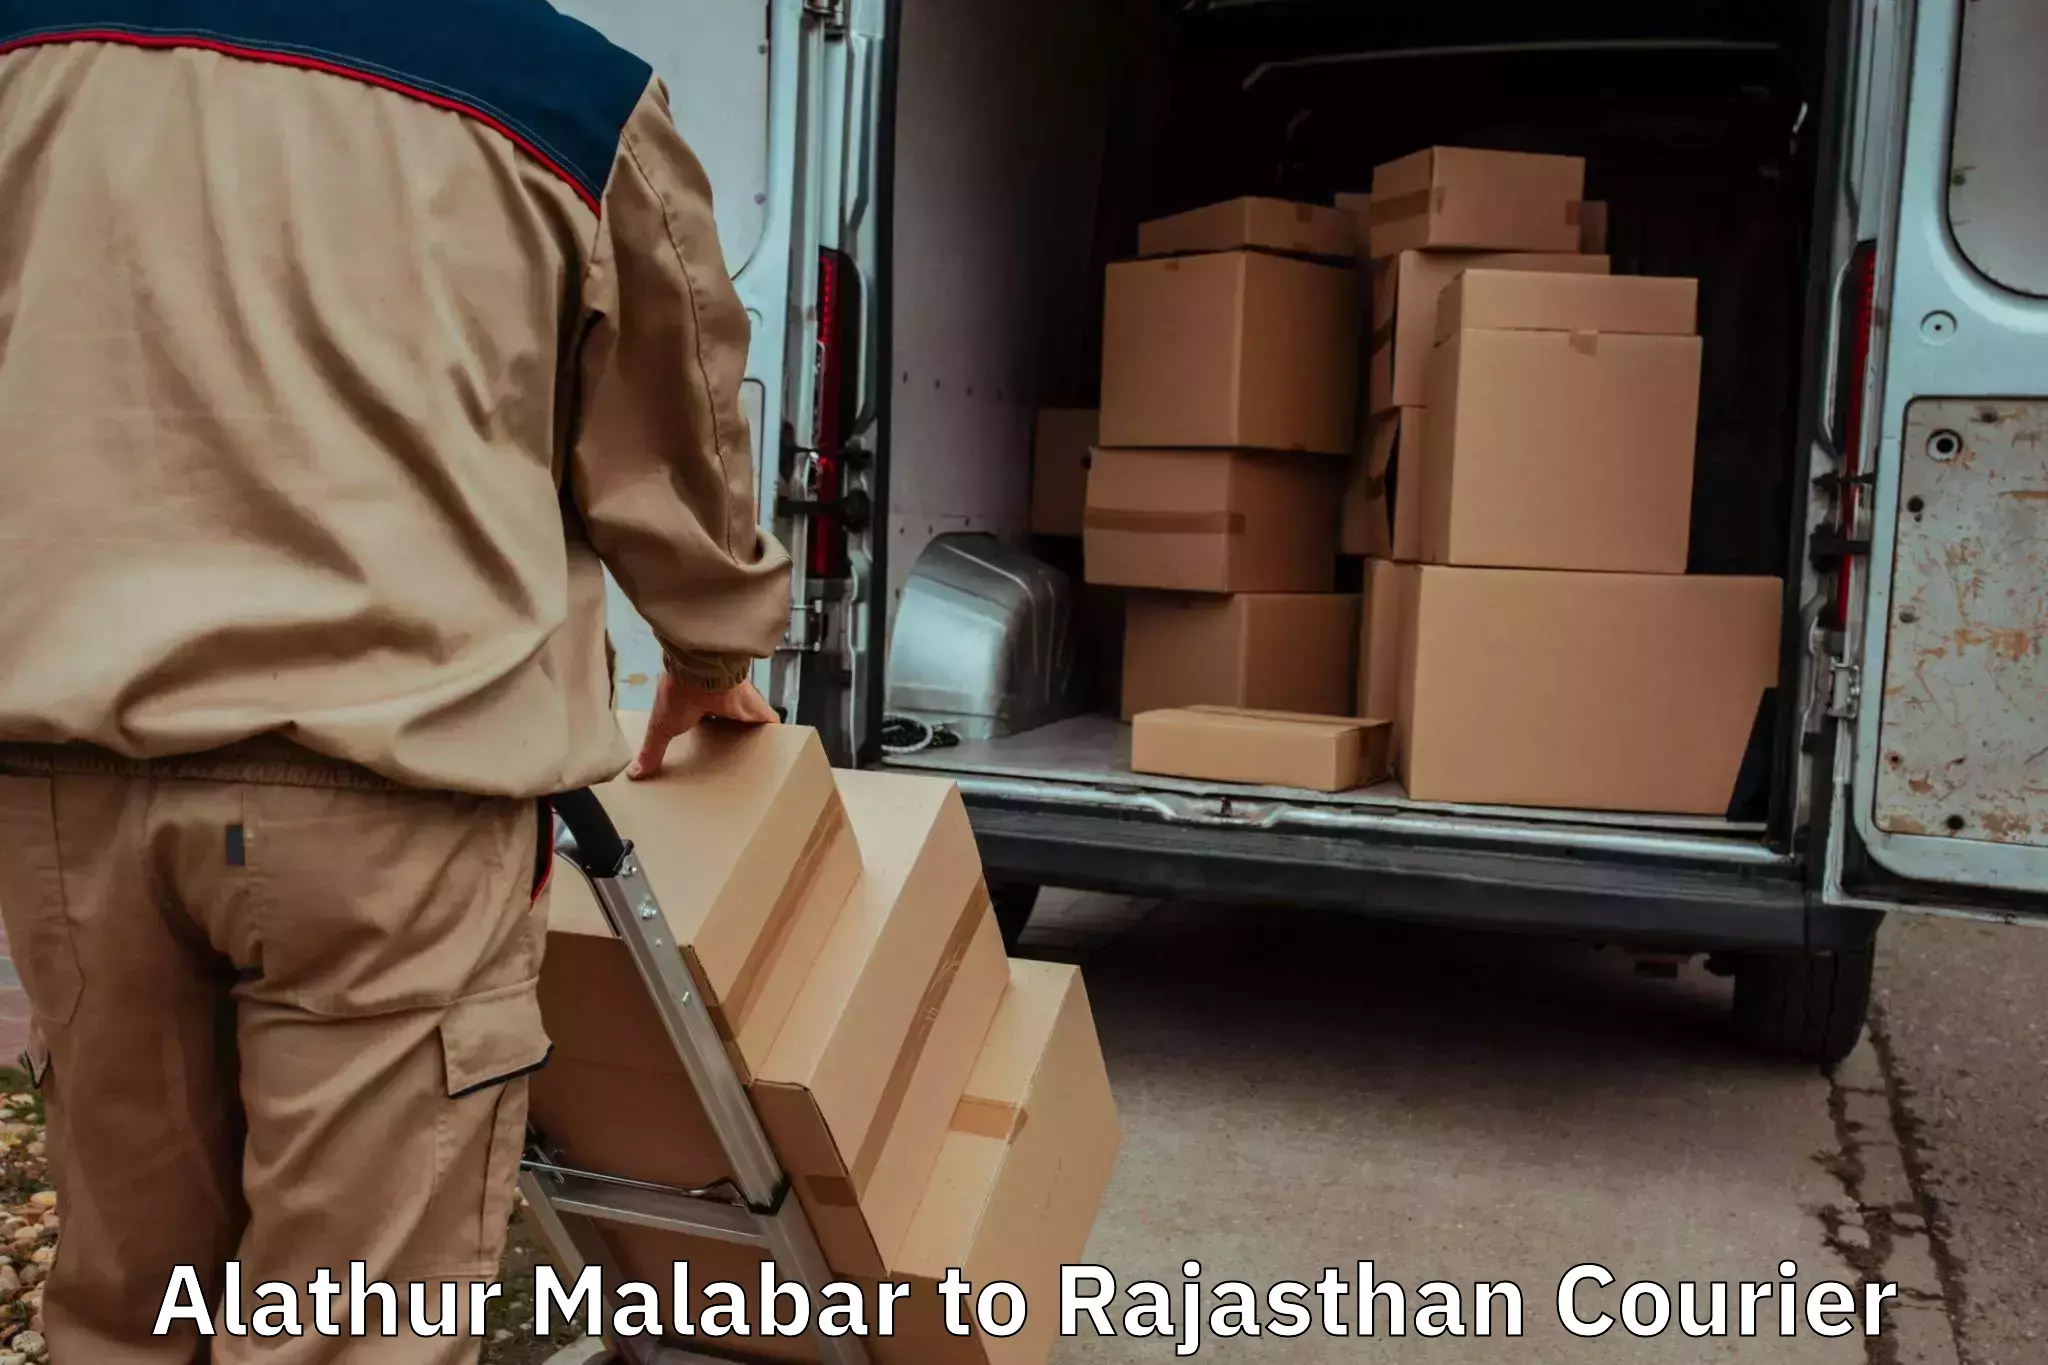 Moving and packing experts Alathur Malabar to Nainwa